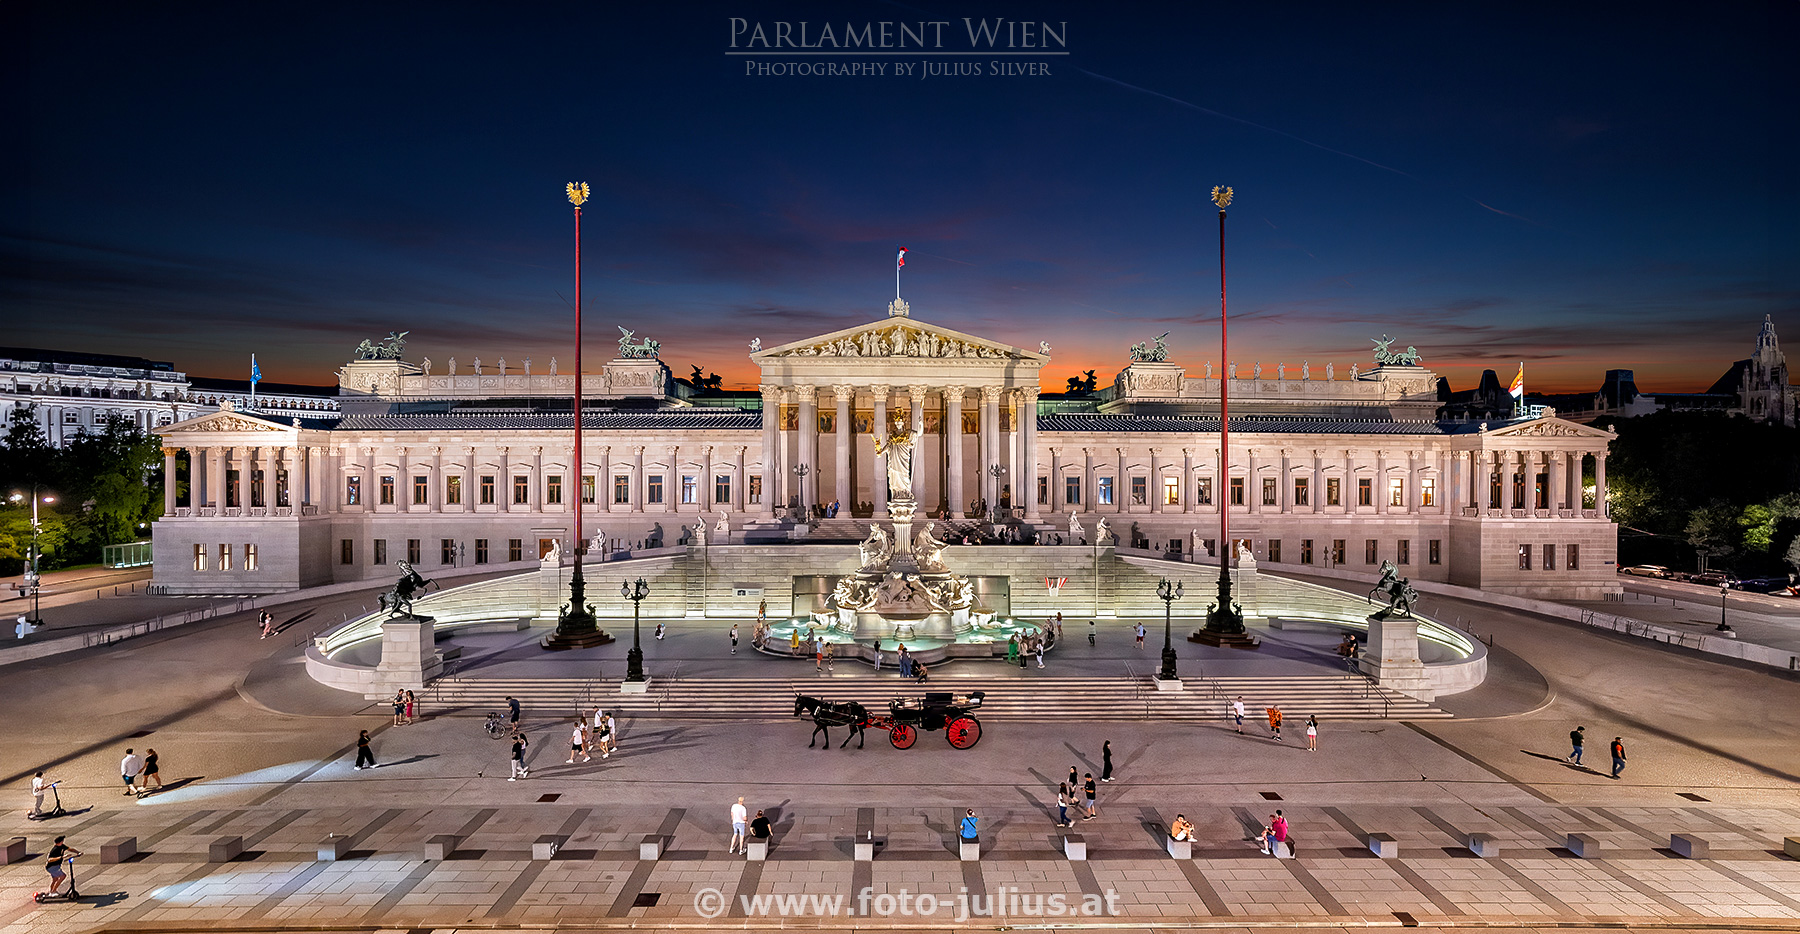 W7441a_Parlament_Wien.jpg, 705kB